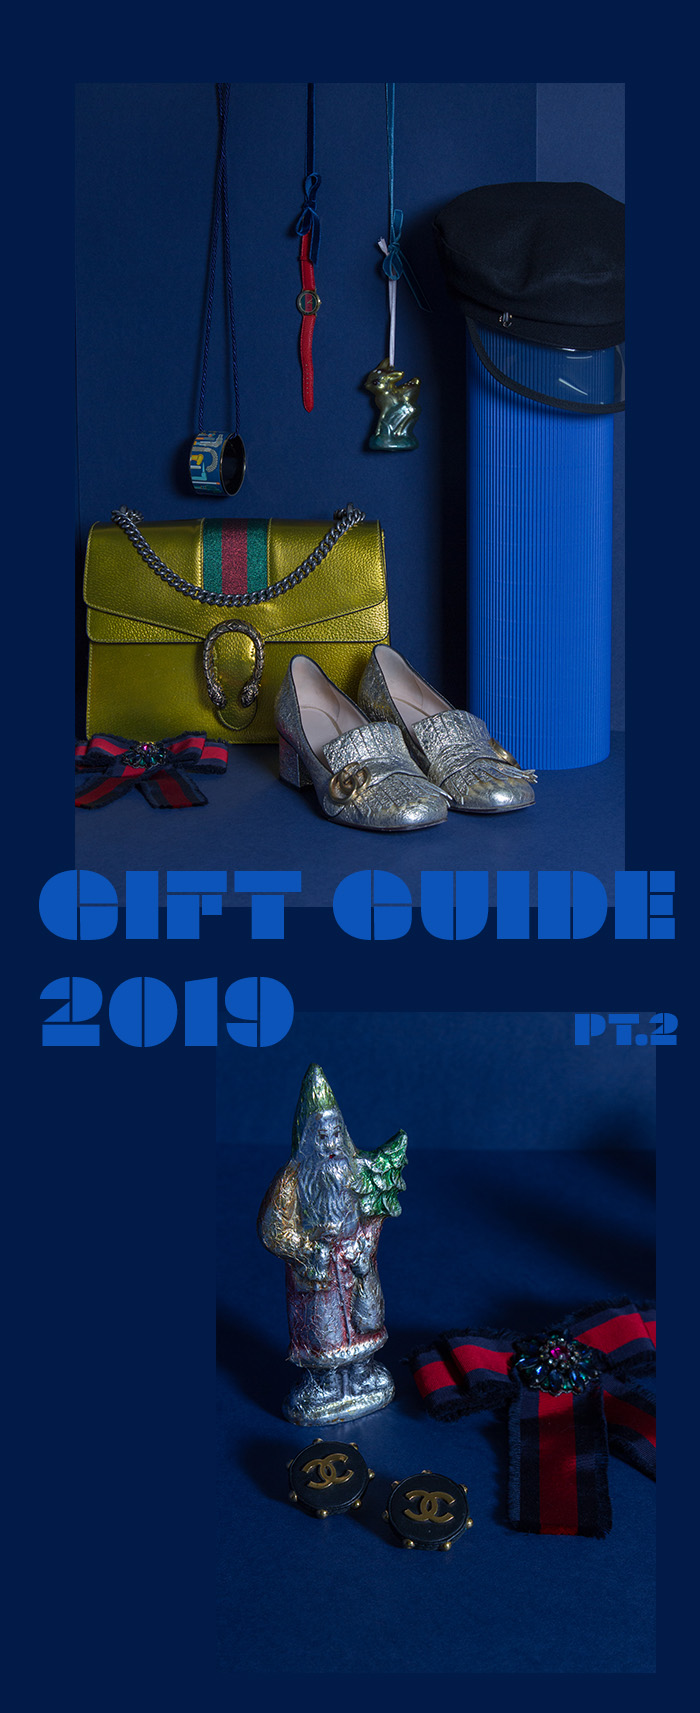 SECONDELLA Geschenke-Guide Weihnachten 2019